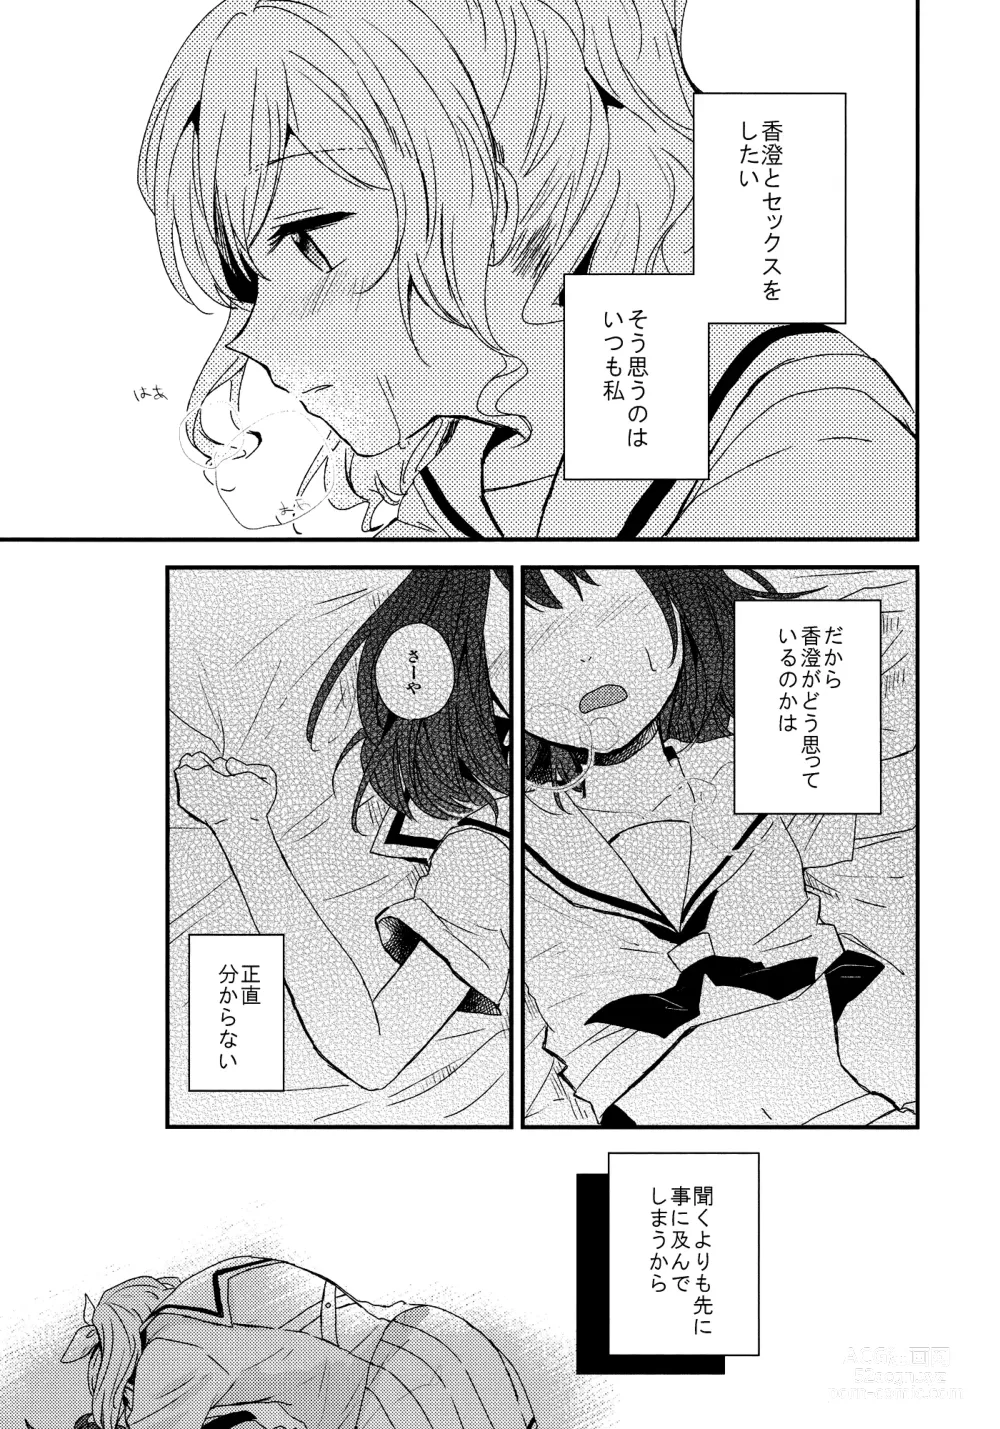 Page 5 of doujinshi Doutoubun no SEXUALITY